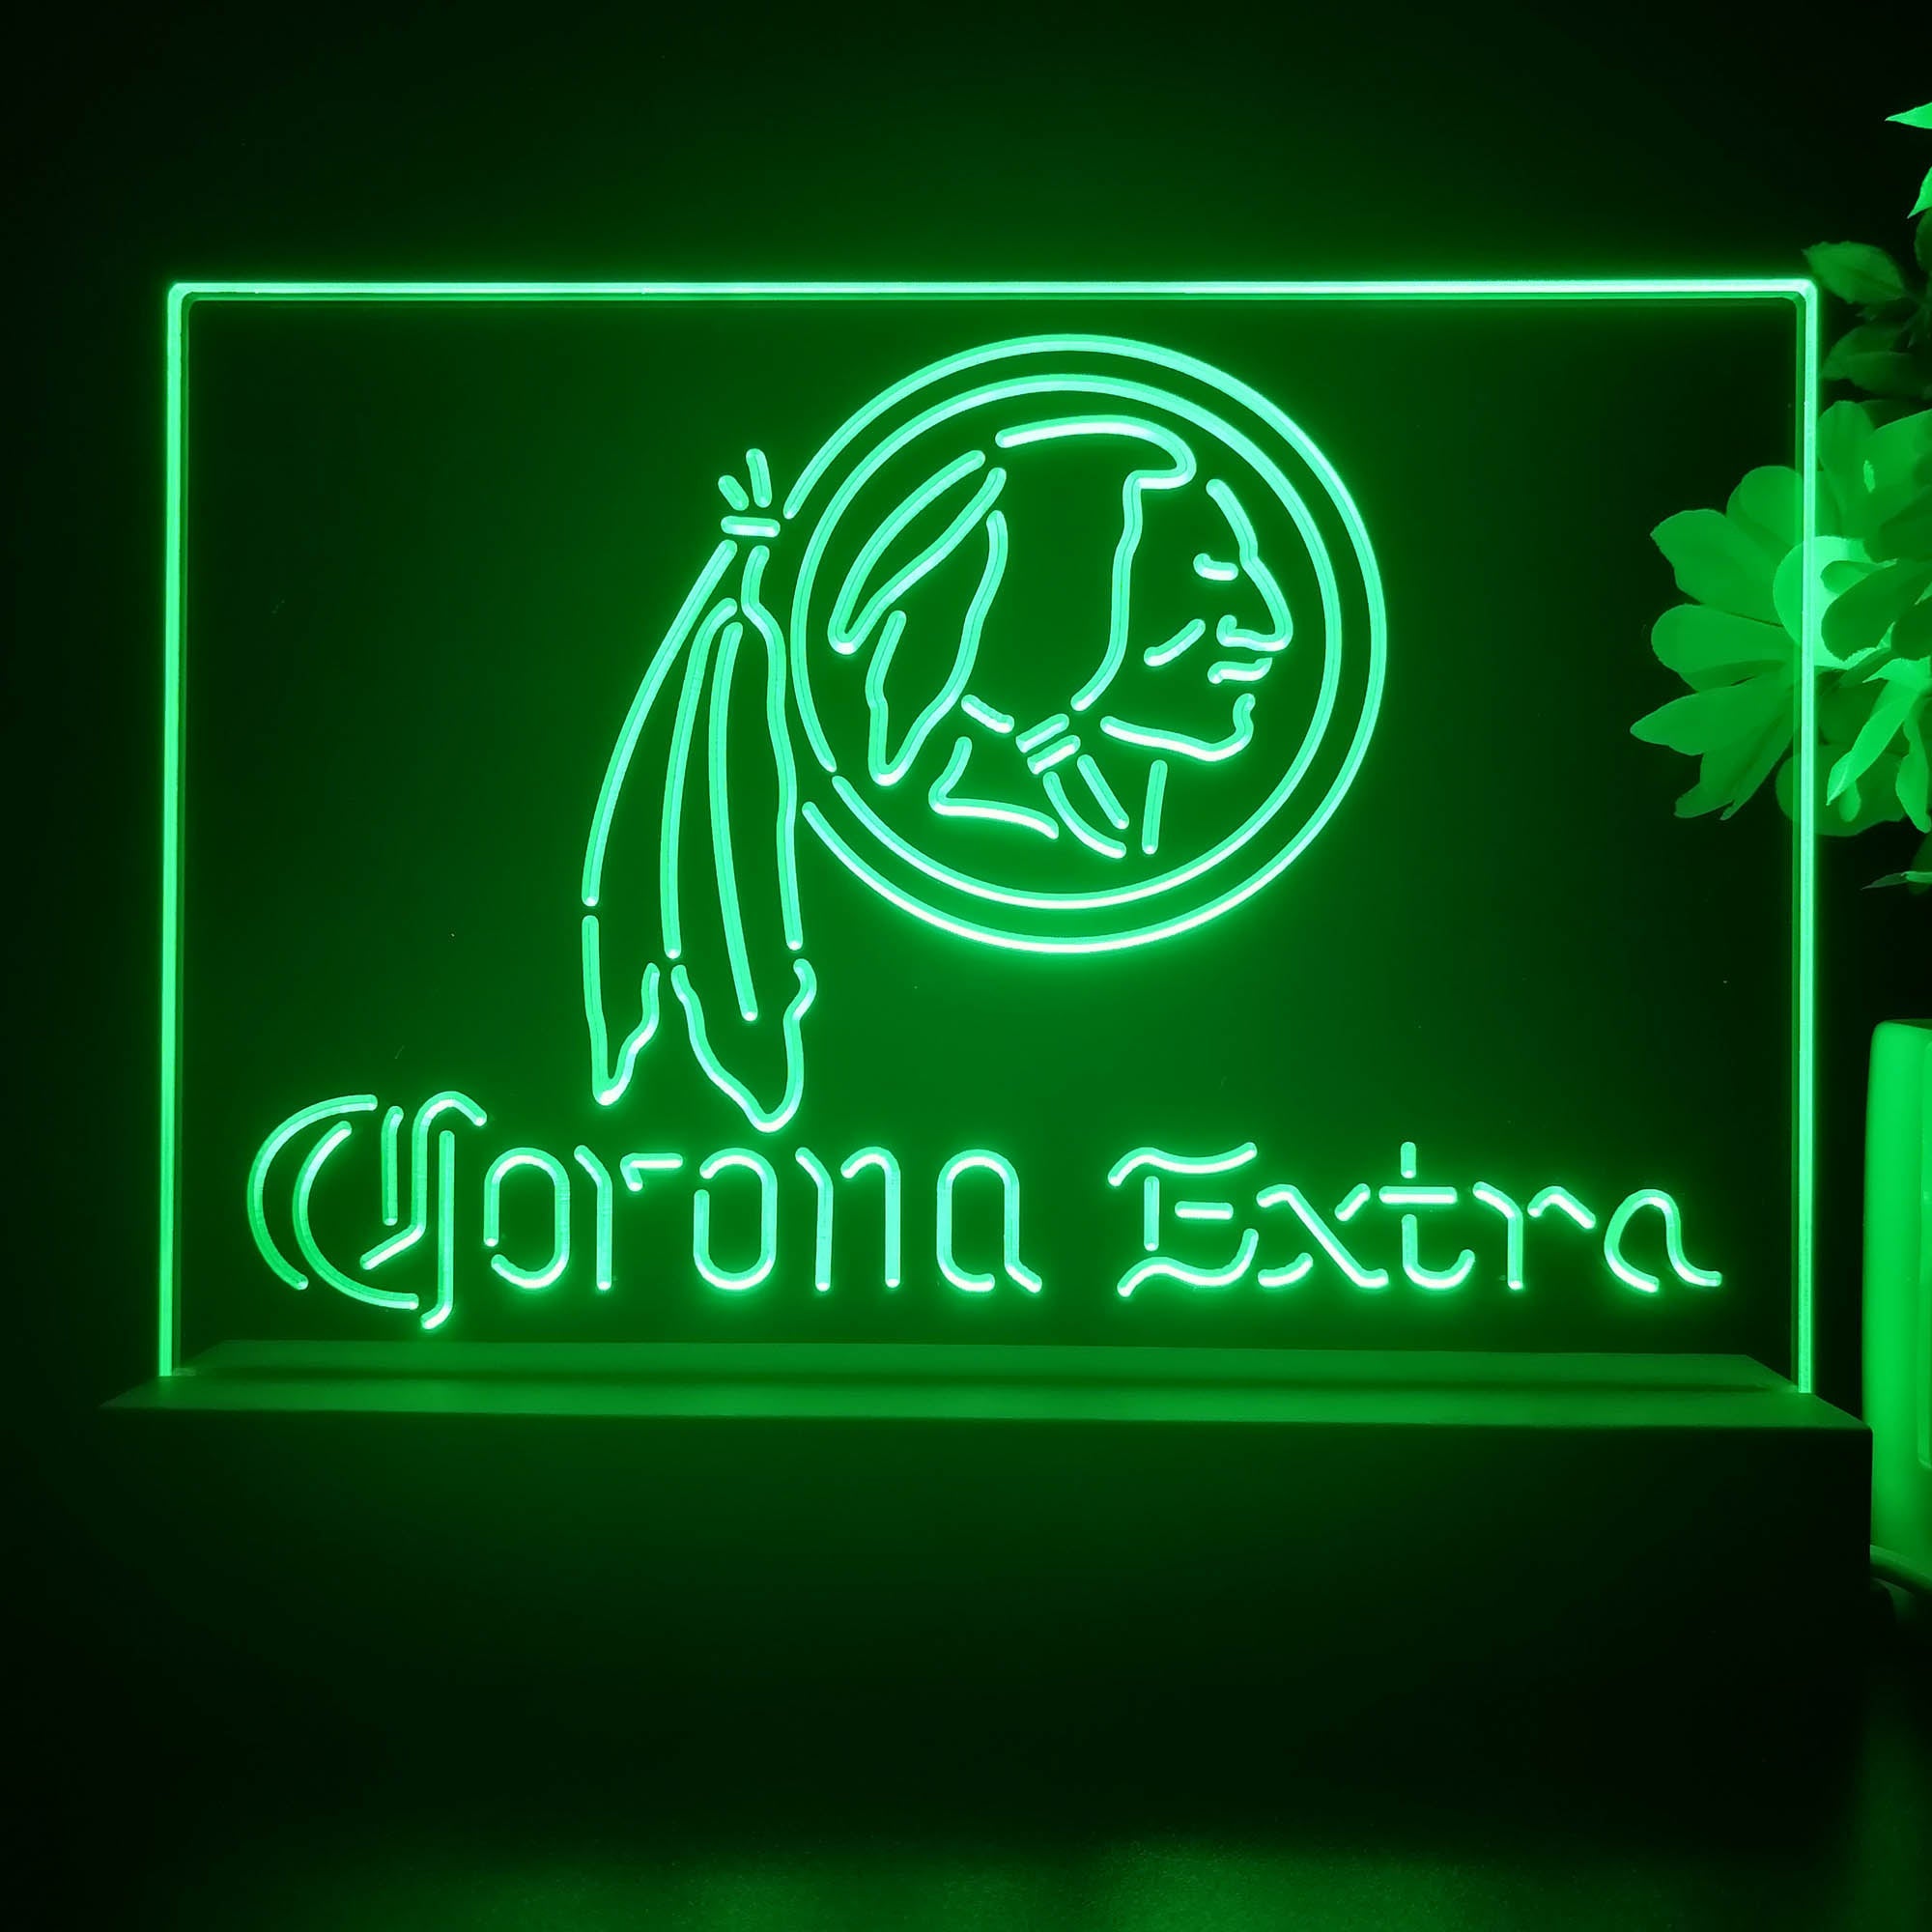 Corona Extra Bar Washington Est. 1932 Night Light Pub Bar Lamp